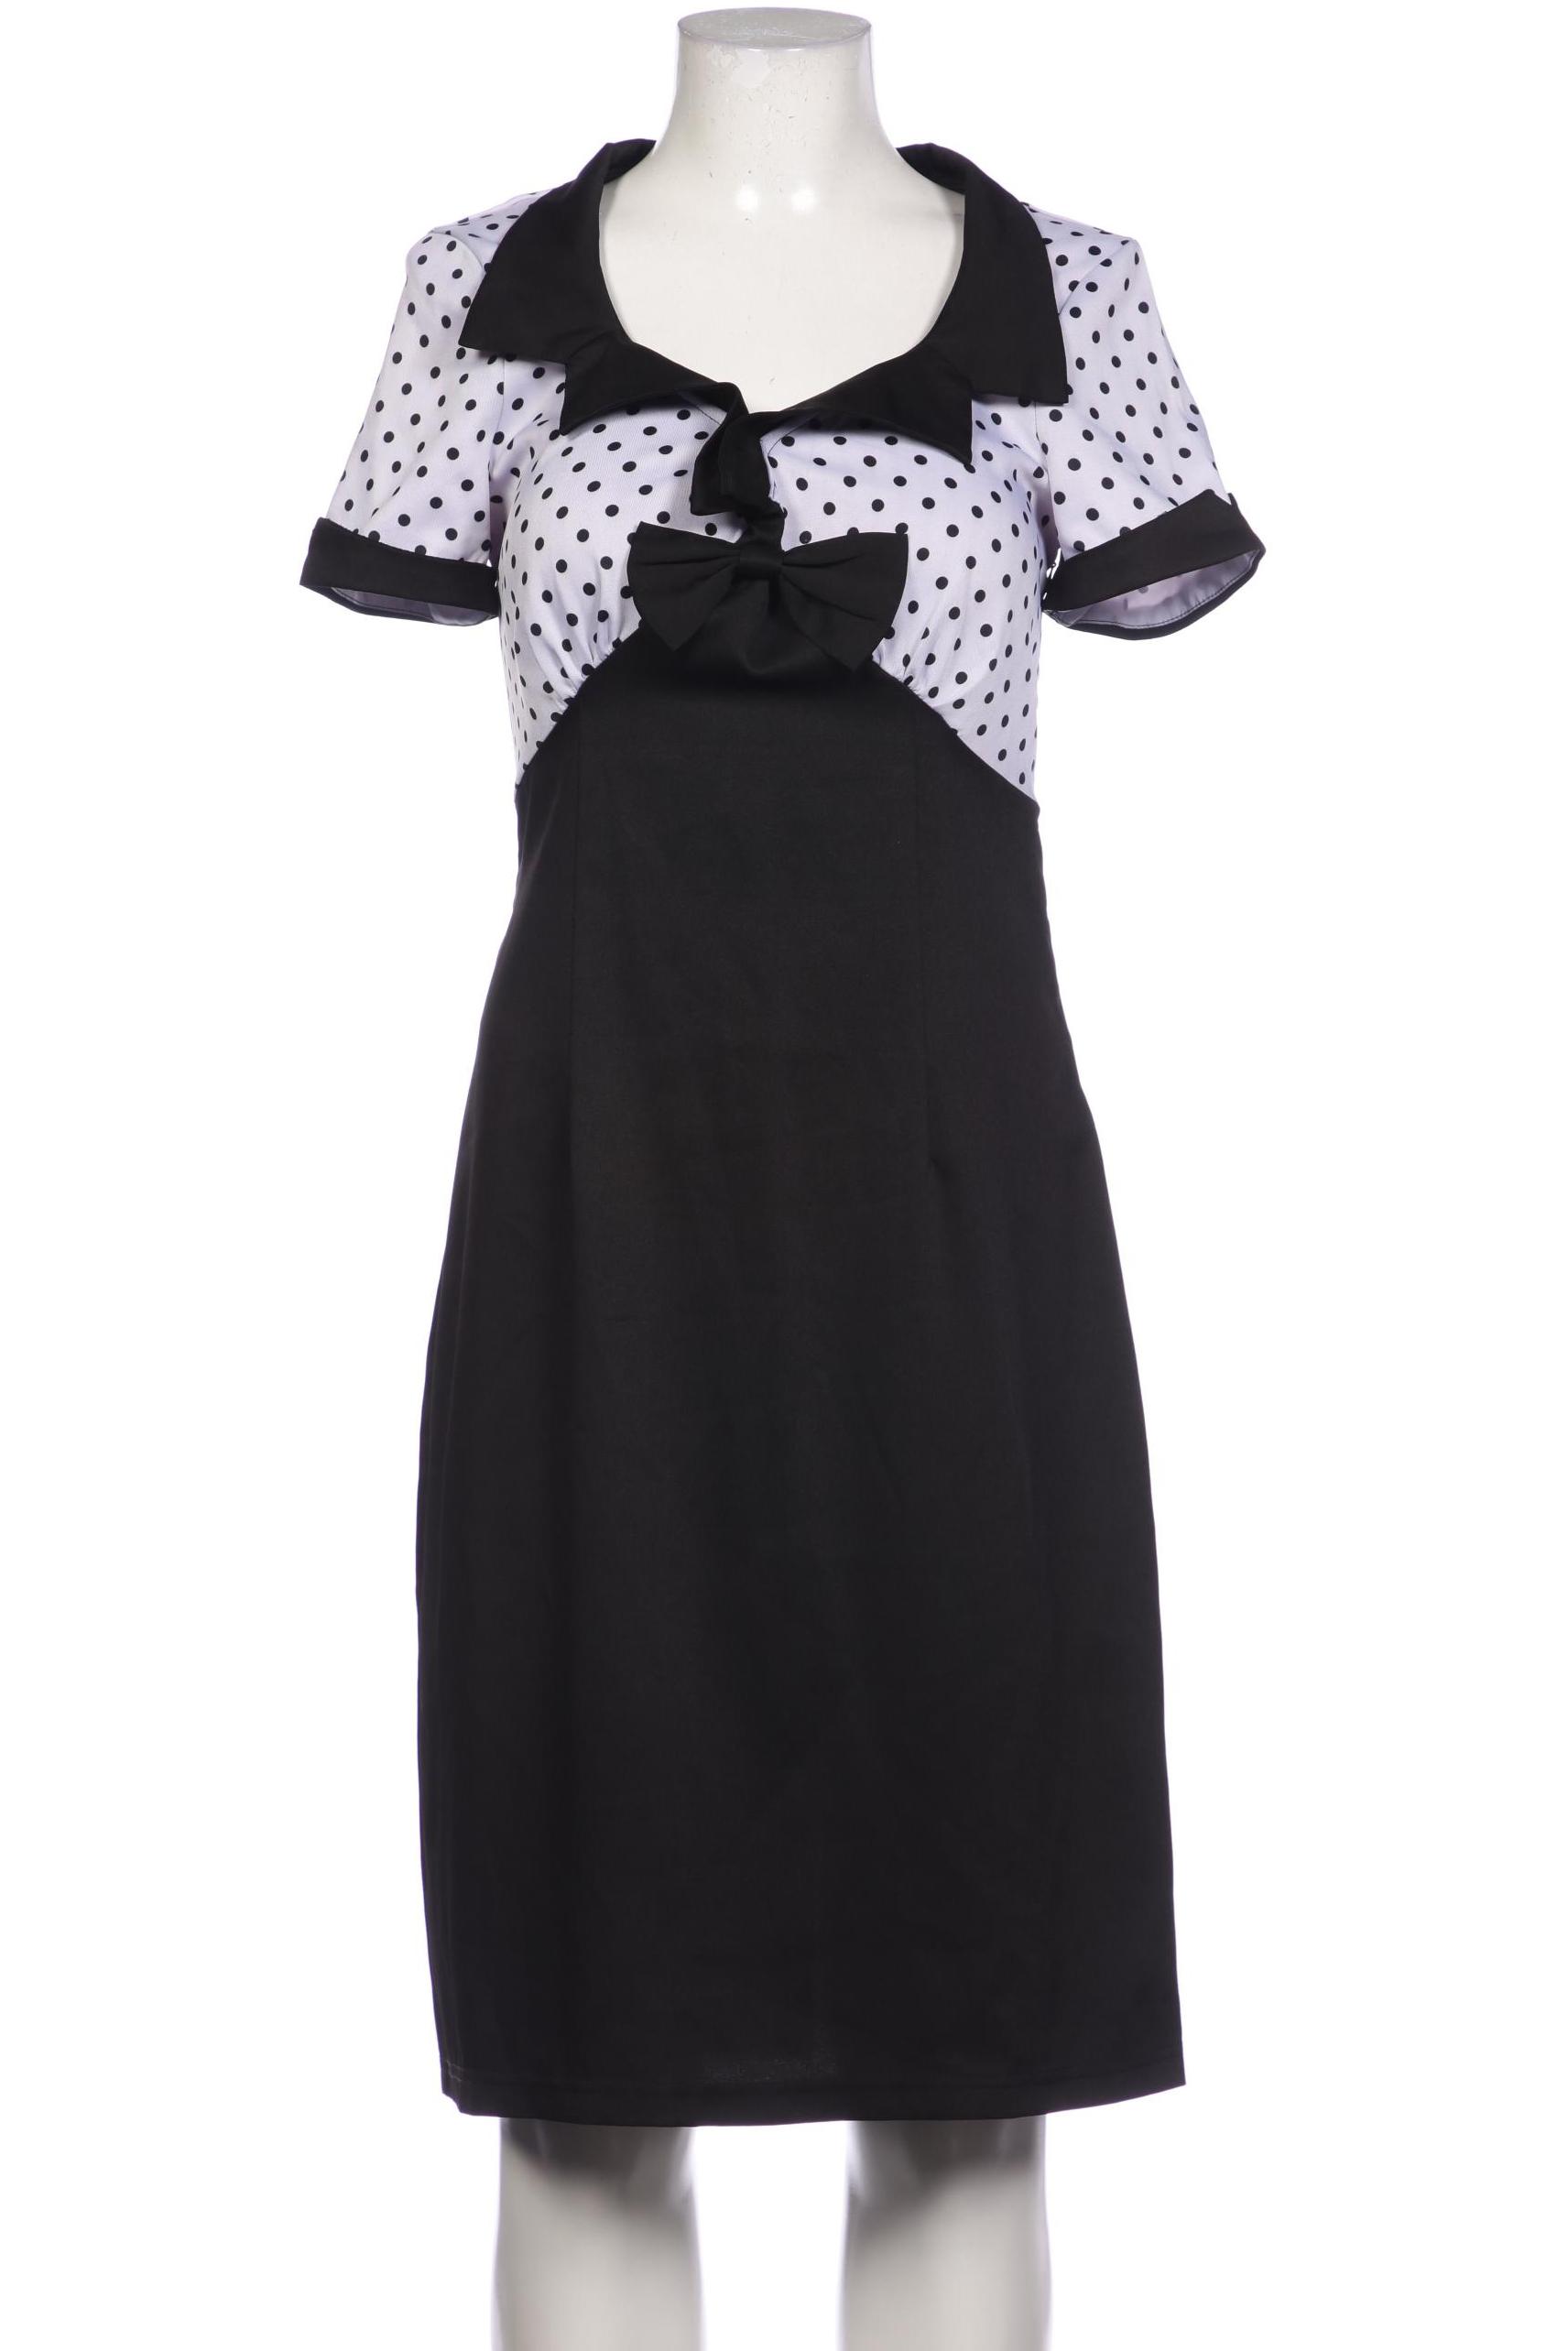 Lindy Bop Damen Kleid, schwarz, Gr. 40 von lindy bop